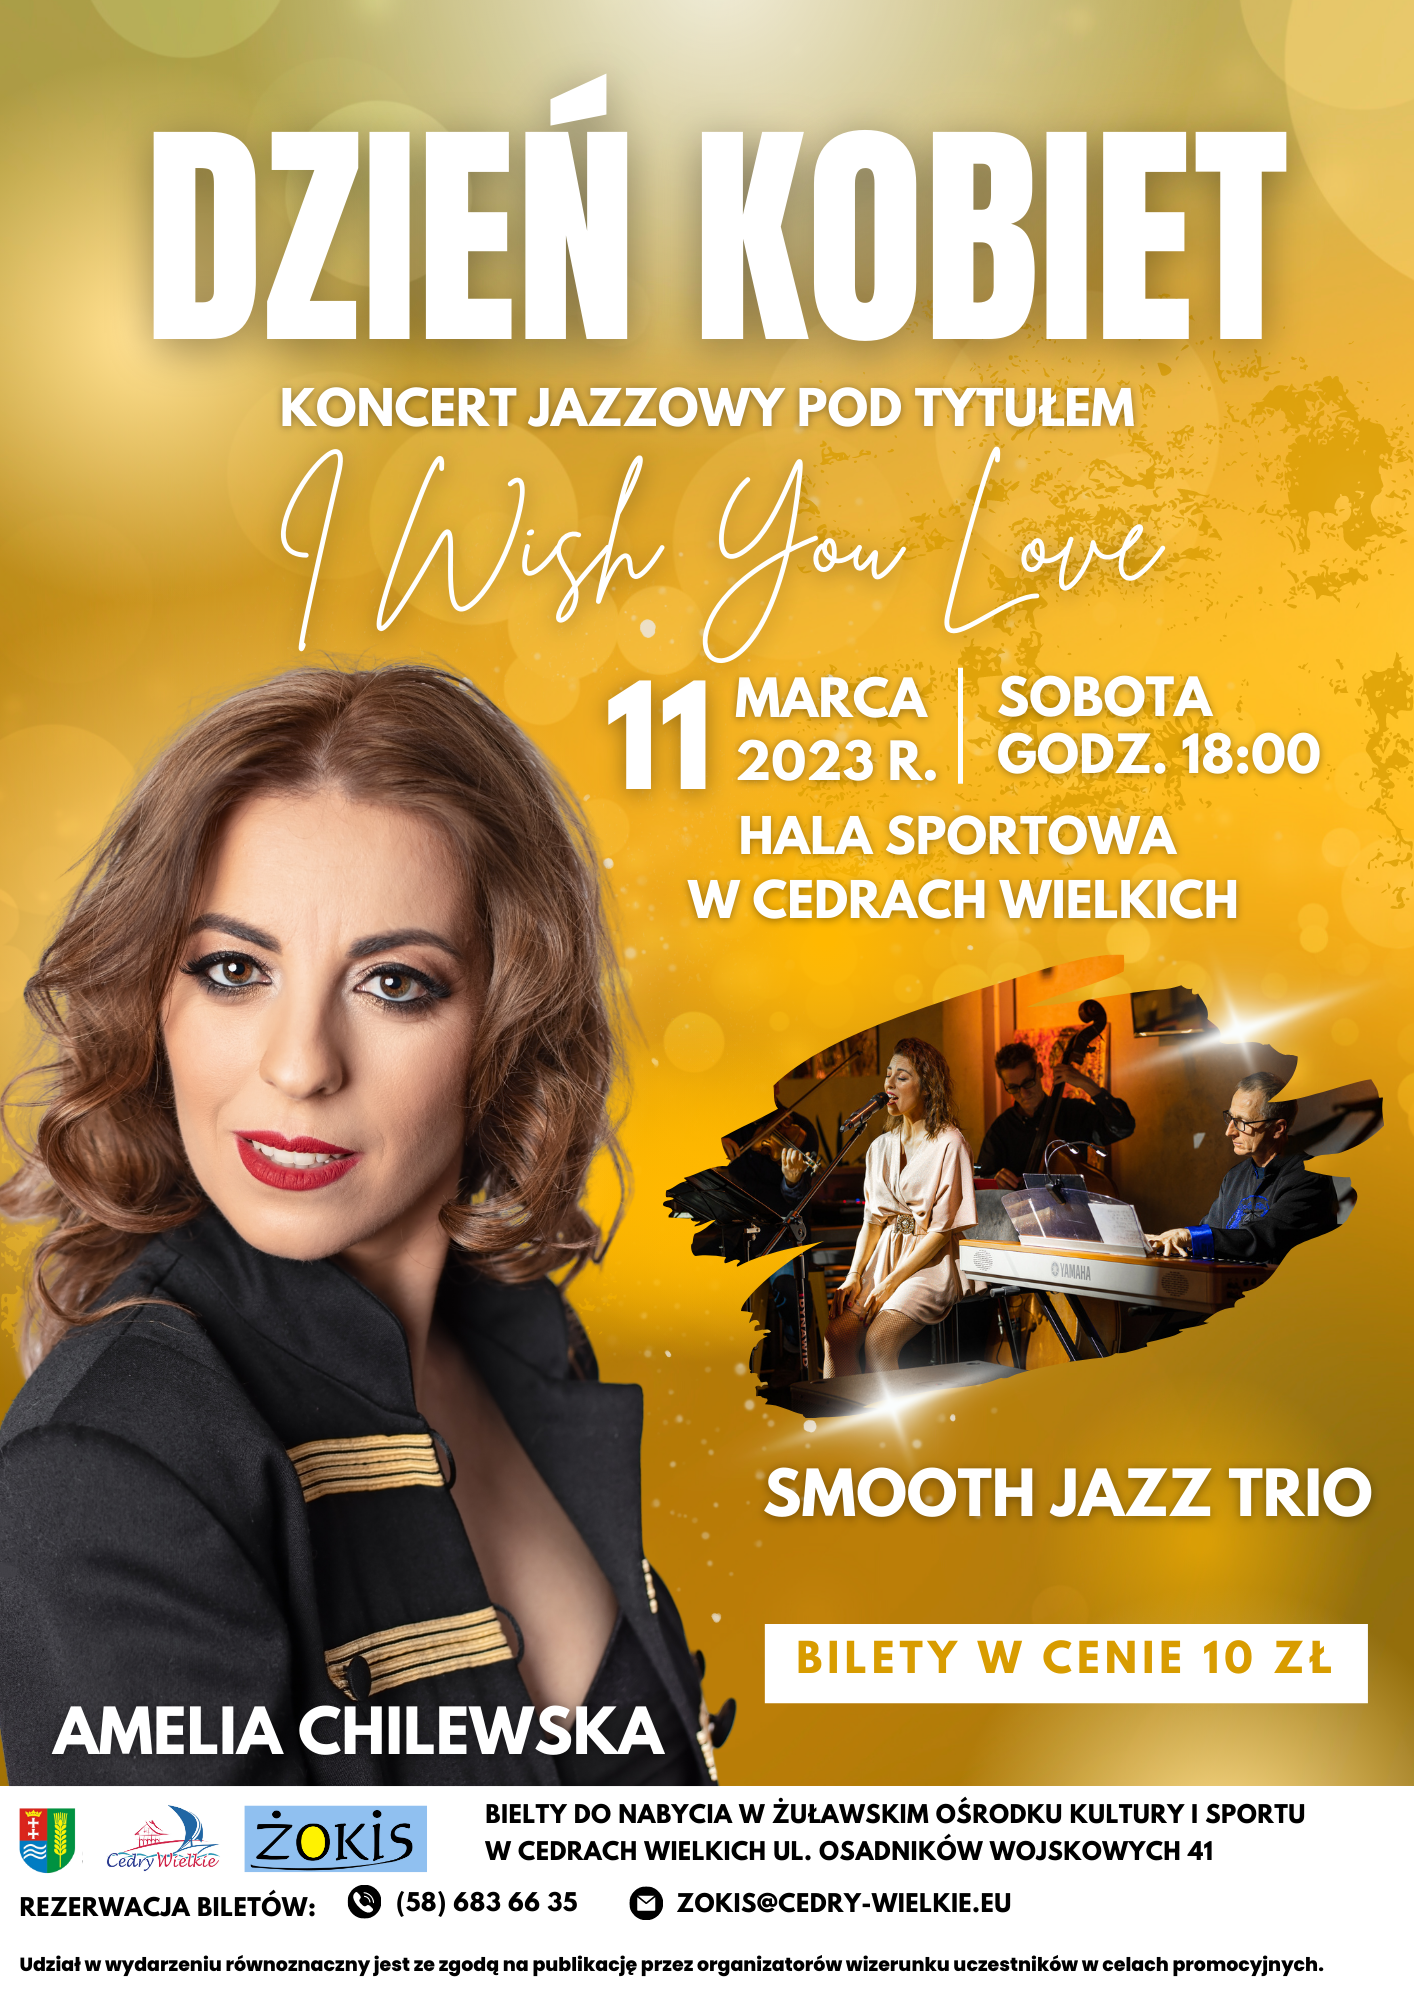 Dzień Kobiet - Koncert Jazzowy pod tyt. "I Wish You Love"